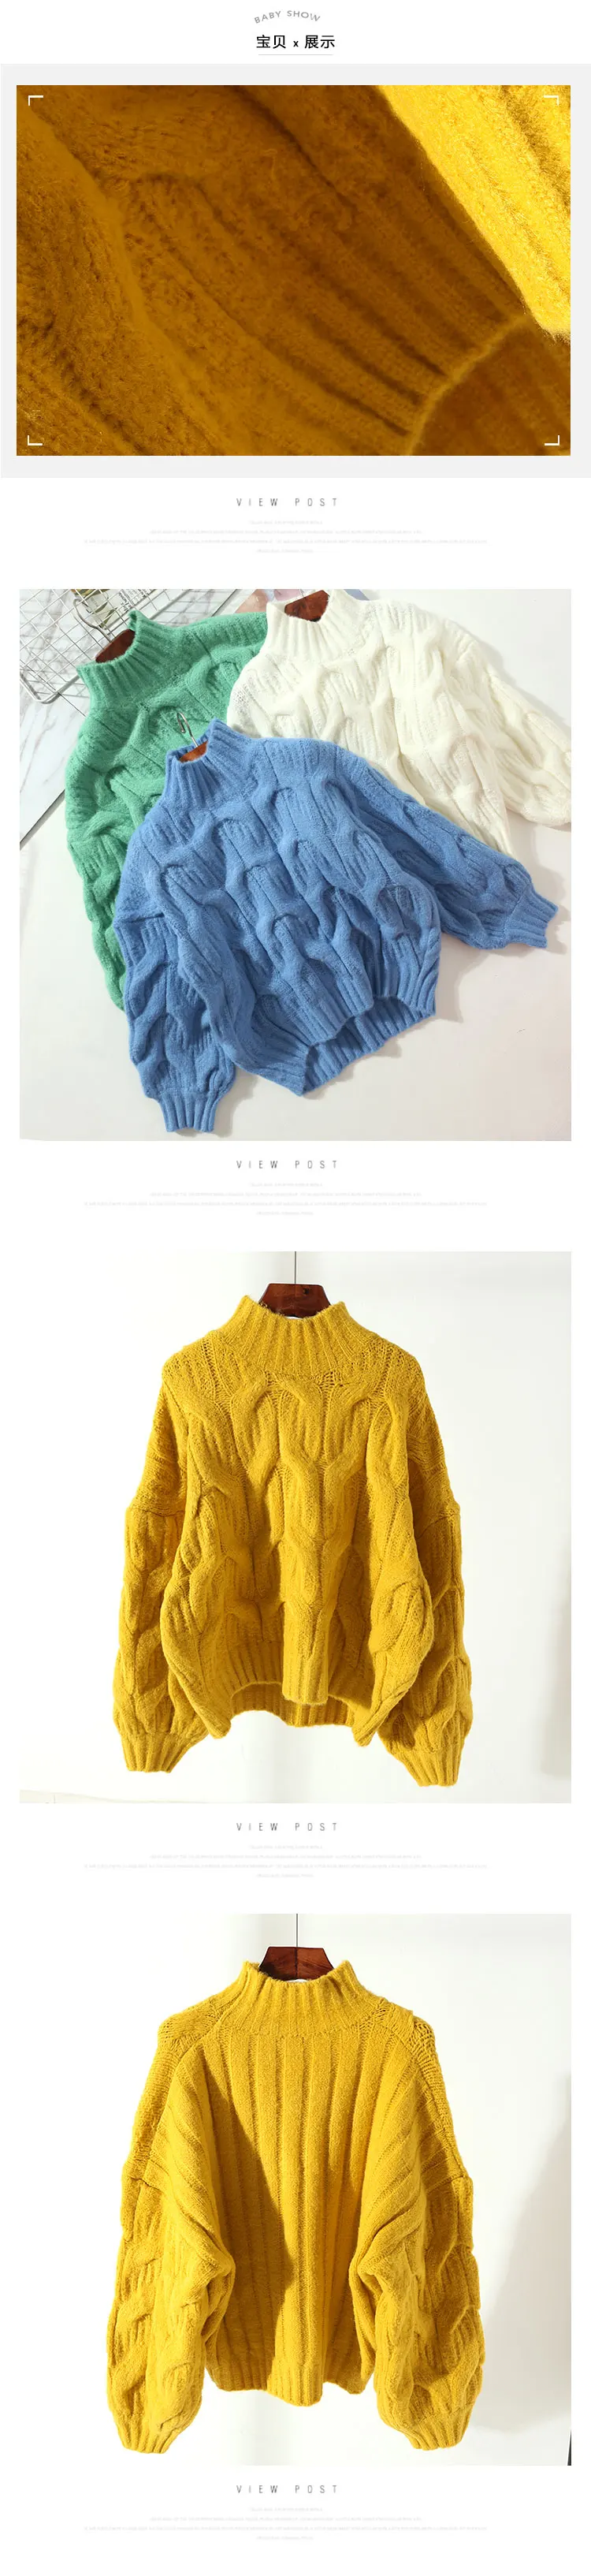 Новинка весны 2018 года Женский Блузки для малышек пуловеры женщин для Фонари рукавом Винтаж твист свитер дамы свободные грубой пальт